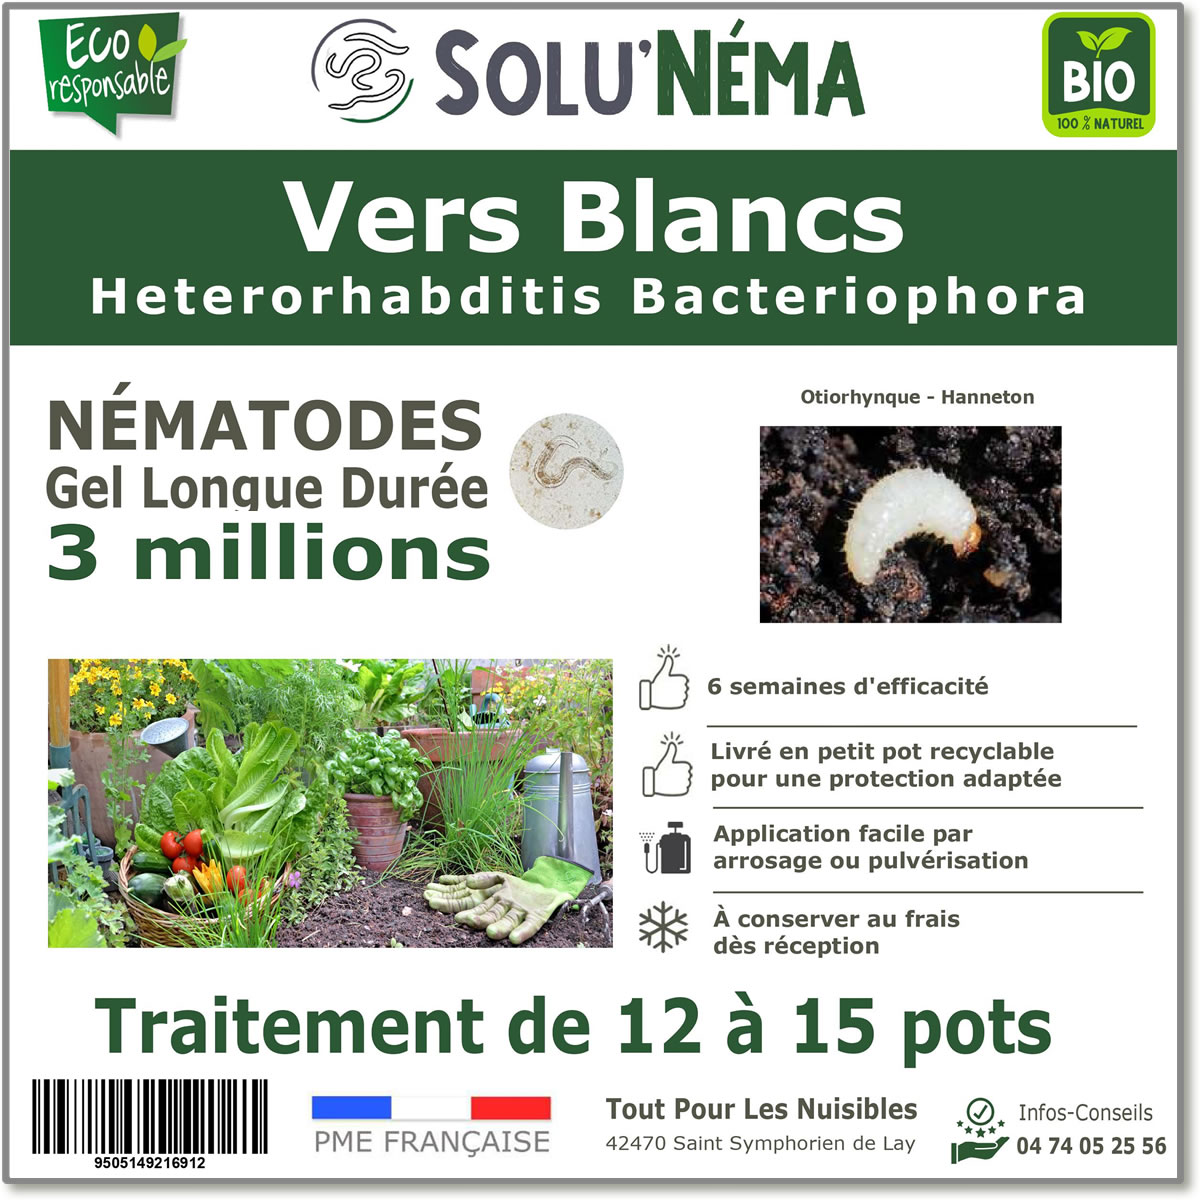 Nematoden (HB) Solunema voor witte larven - taxuskever - meikever 3 miljoen SF